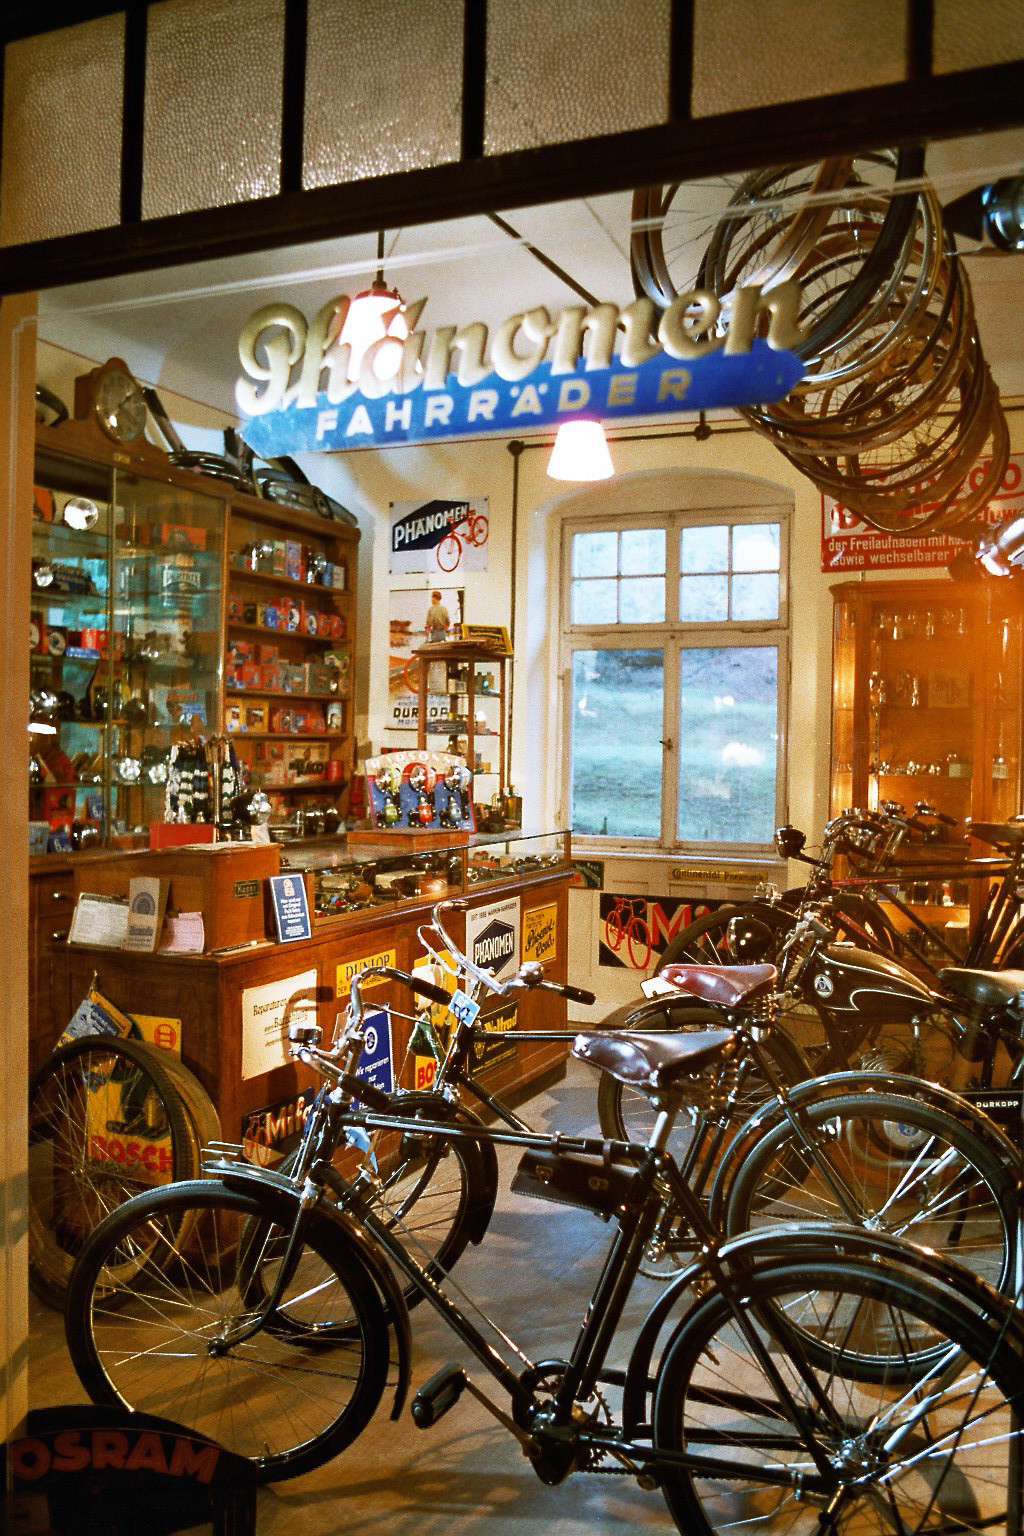 Historische Fahrräder stehen vor einer Ladentheke, die mit historischer Reklame beklebt ist, im Hintergrund steht ein hohes Regal mit Fahrradzubehör und auf dem Schaufenster ist der Schriftzug von der Firma Phänomen Fahrräder zu sehen.